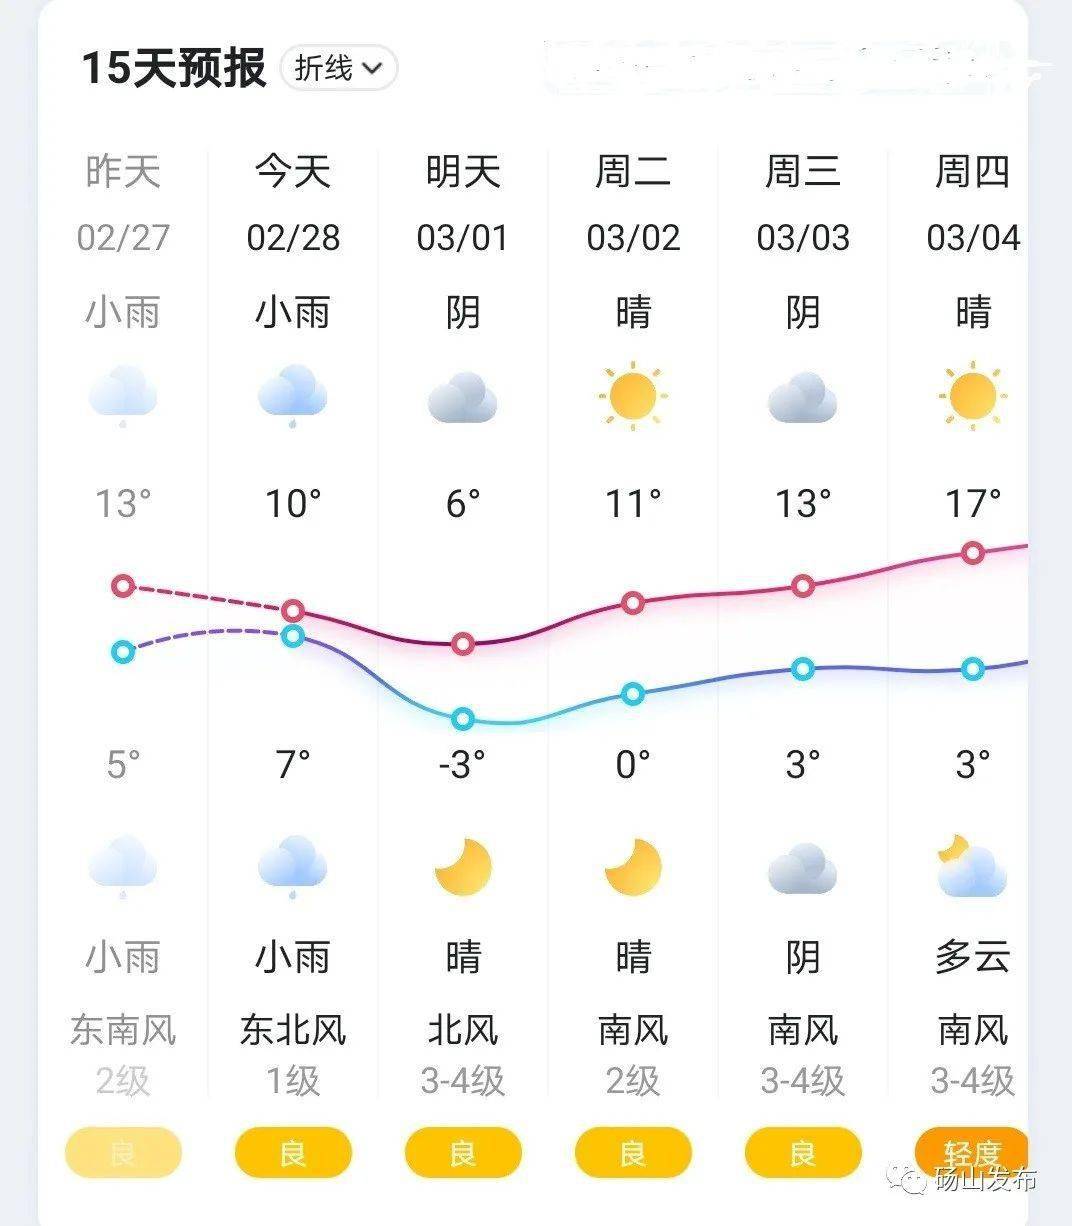 厚毛衣什么的先别收随时关注天气预报小心感冒来源:砀山县融媒体中心